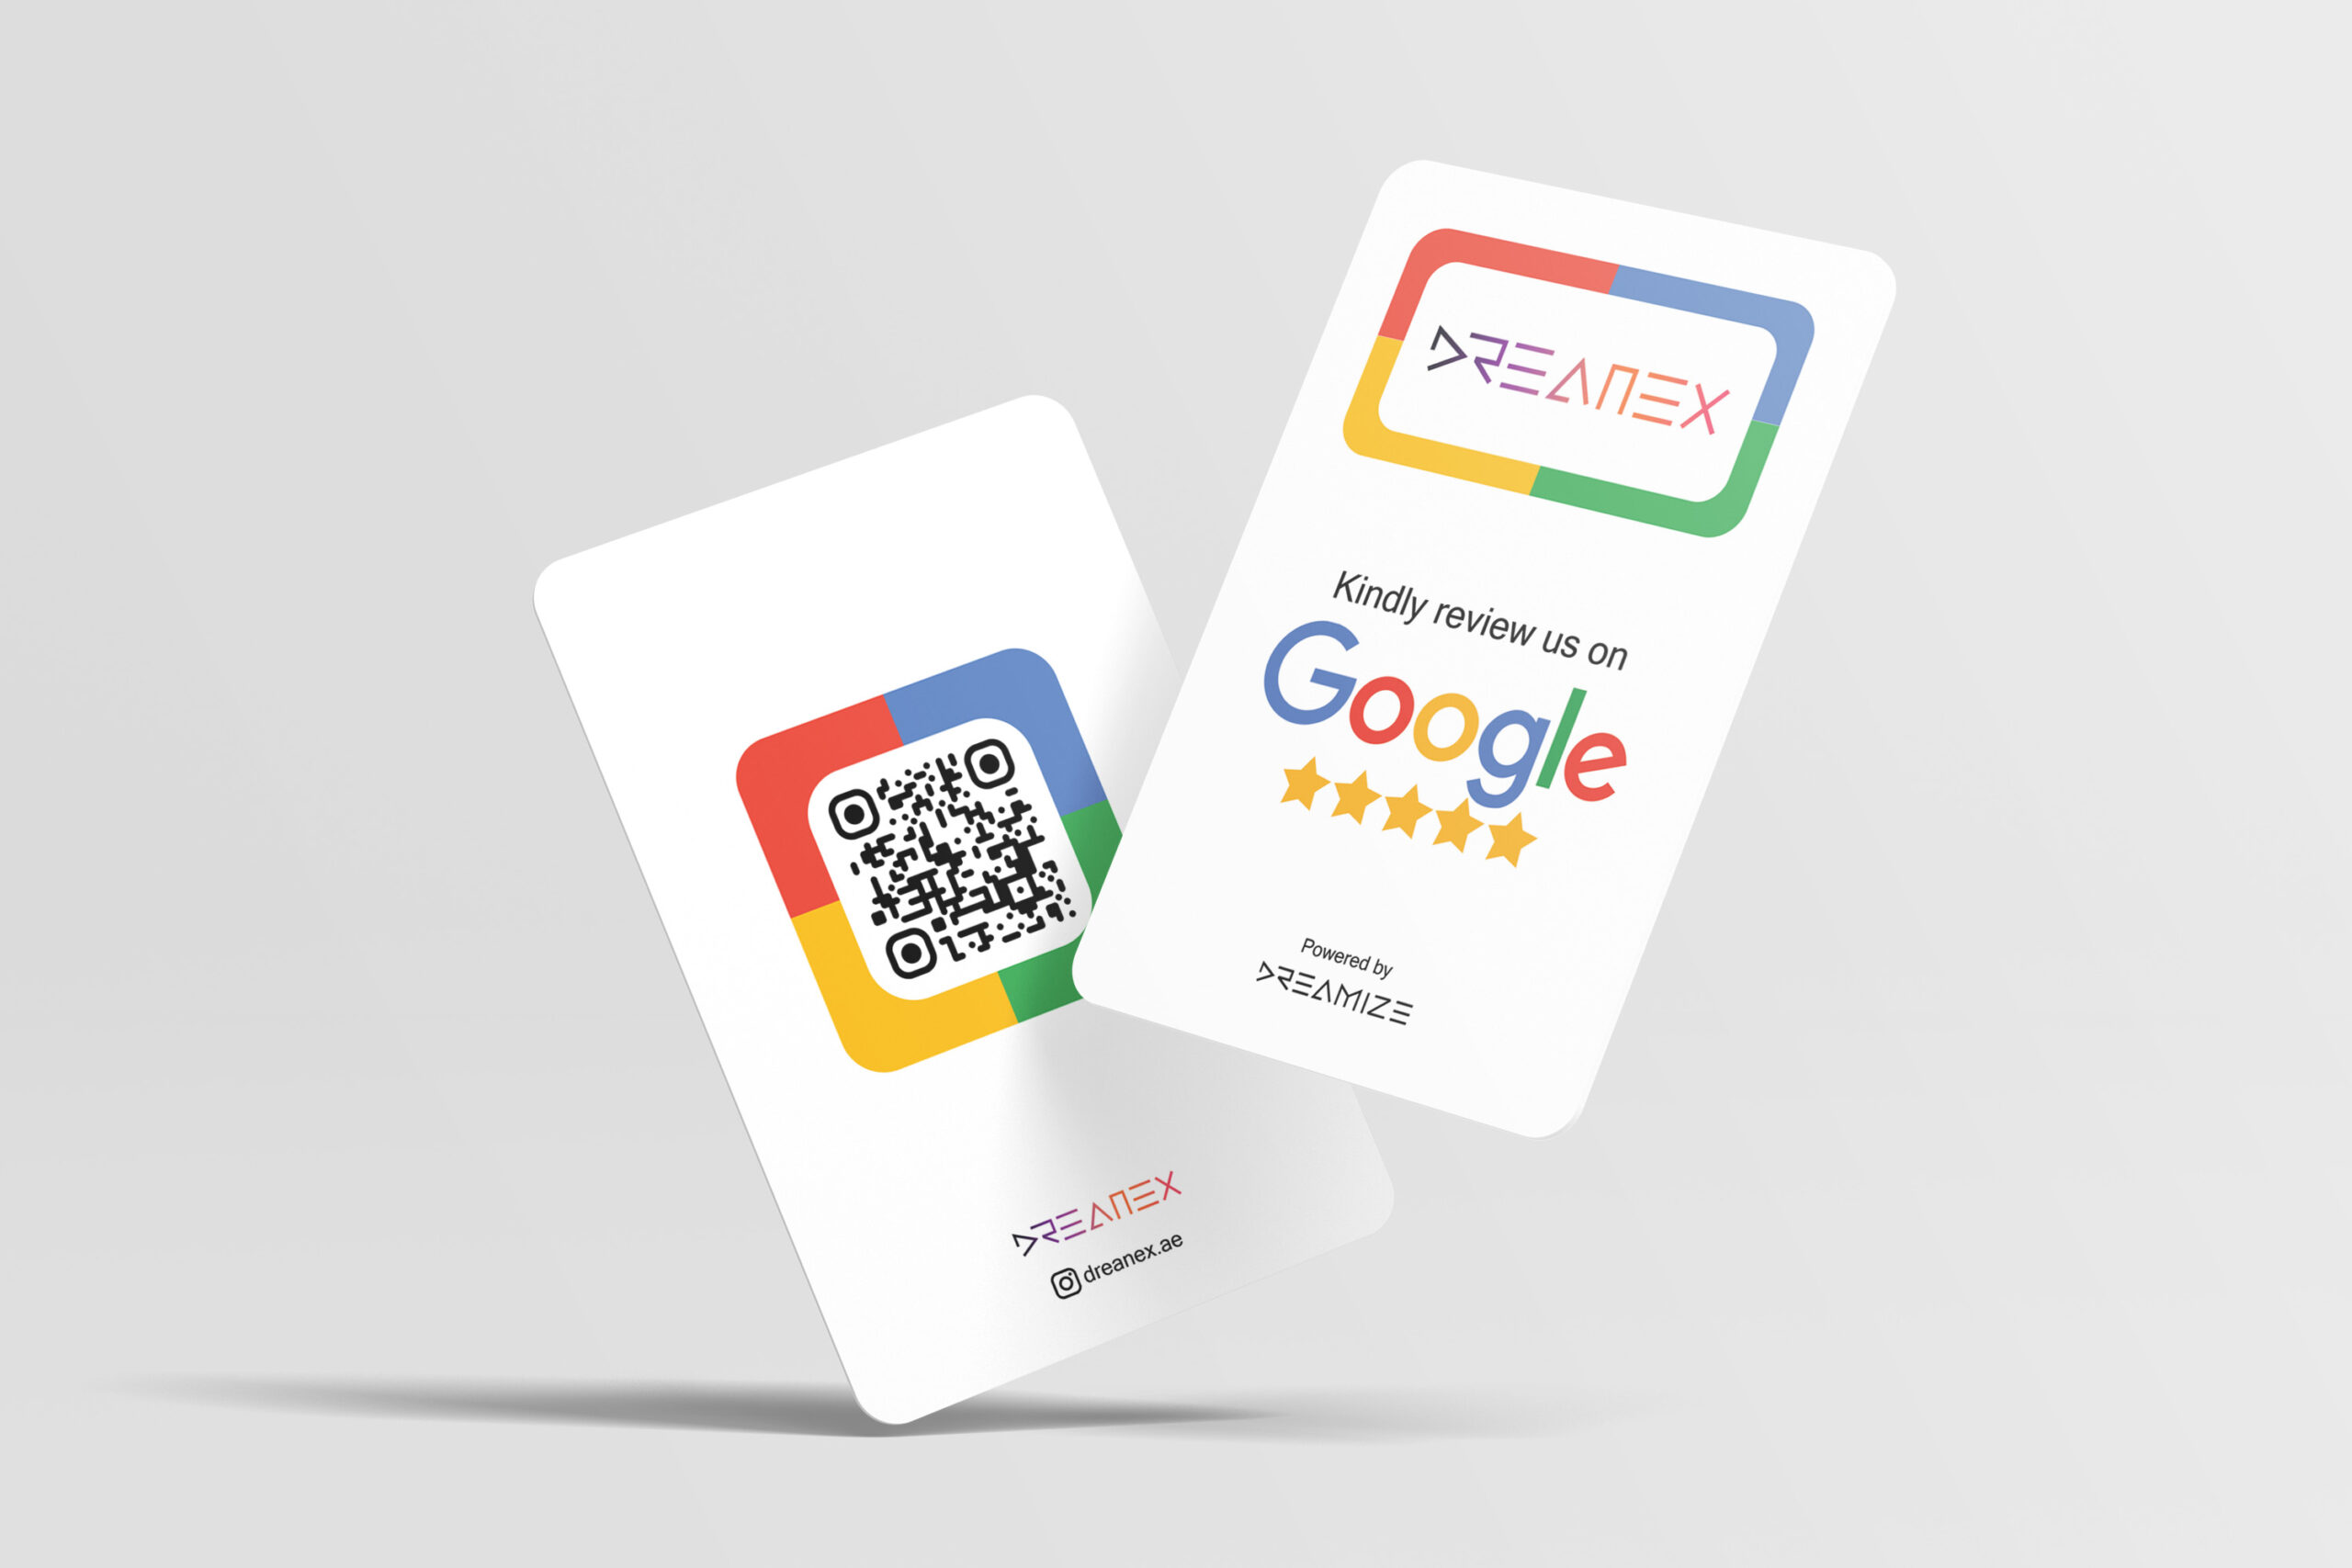 Dreamex Google review NFC Card Dubai